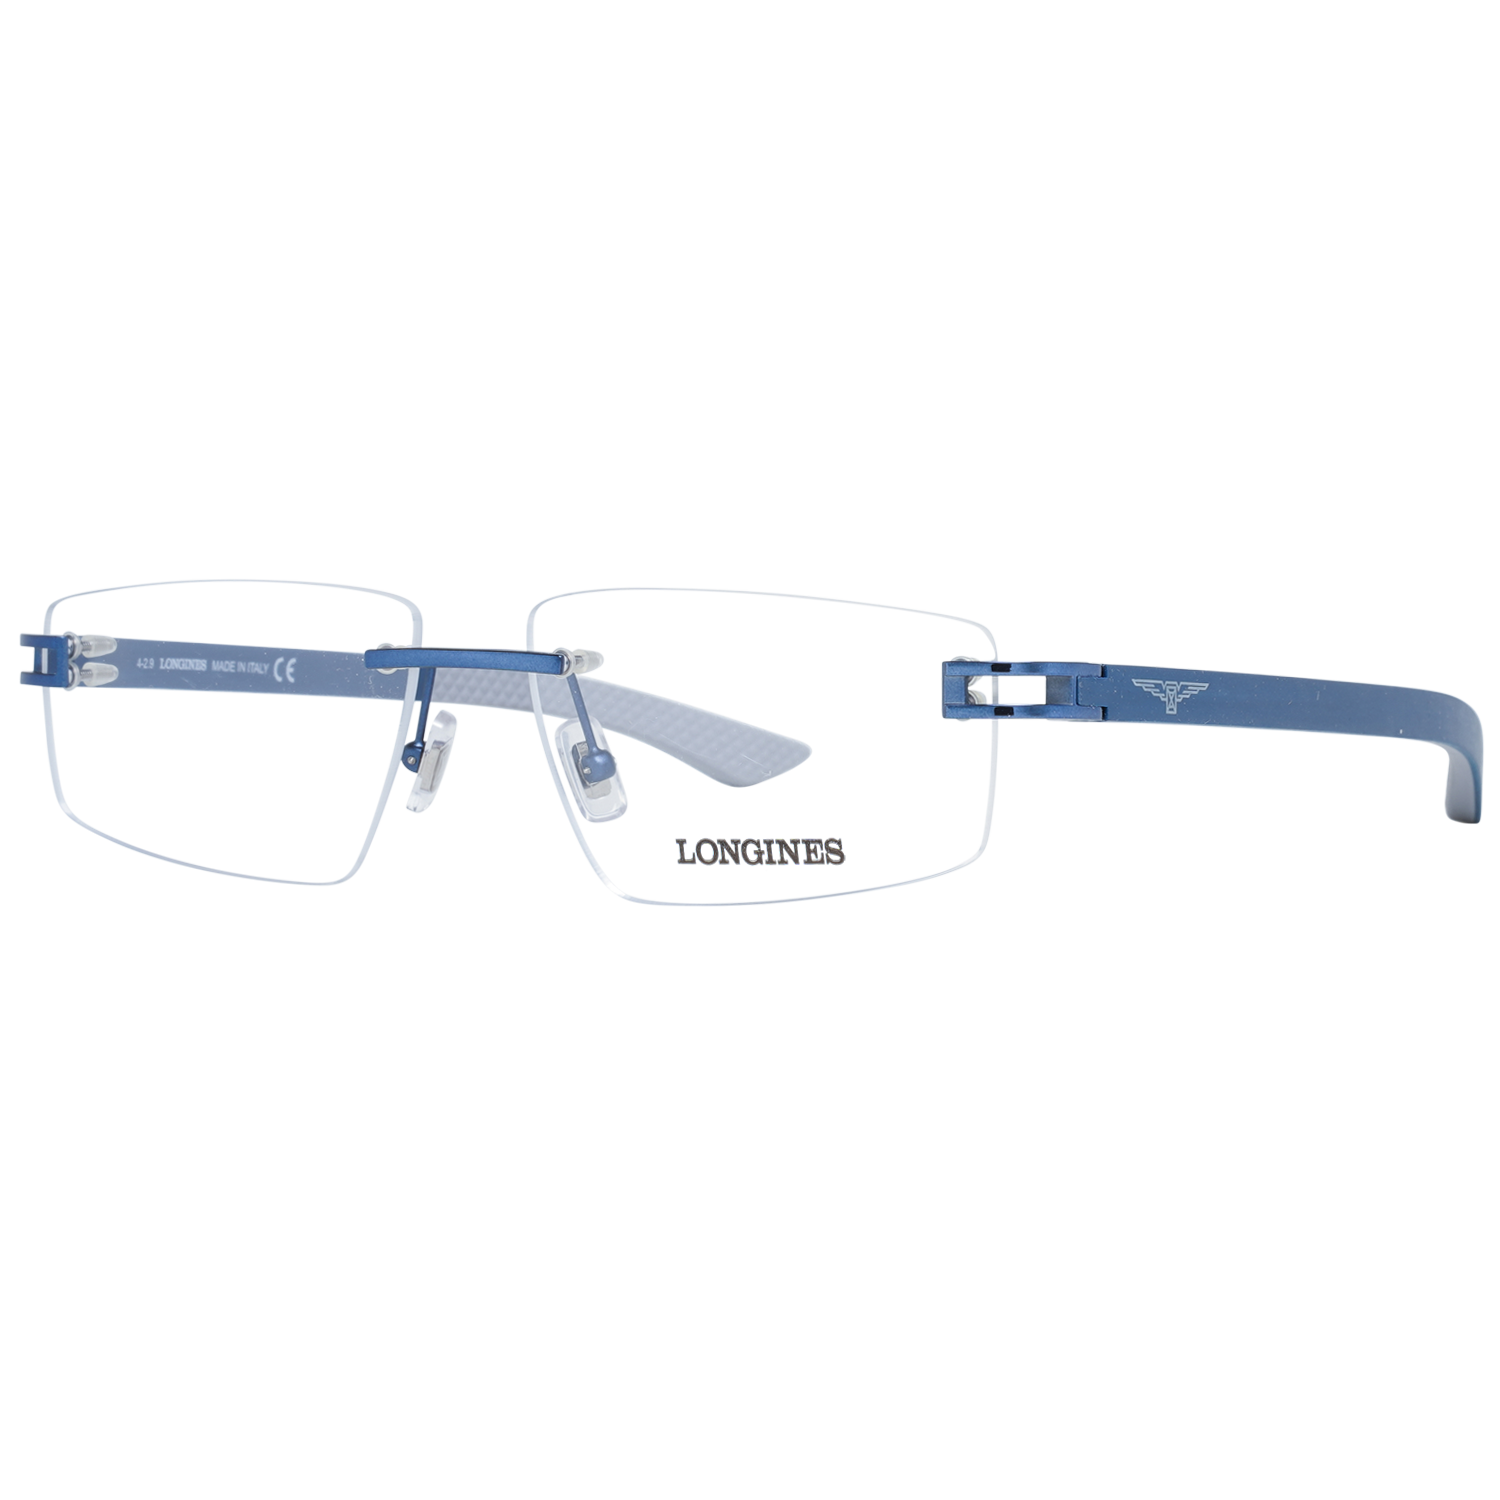 Longines Frames Longines Optical Frame LG5007-H 090 56 Eyeglasses Eyewear UK USA Australia 